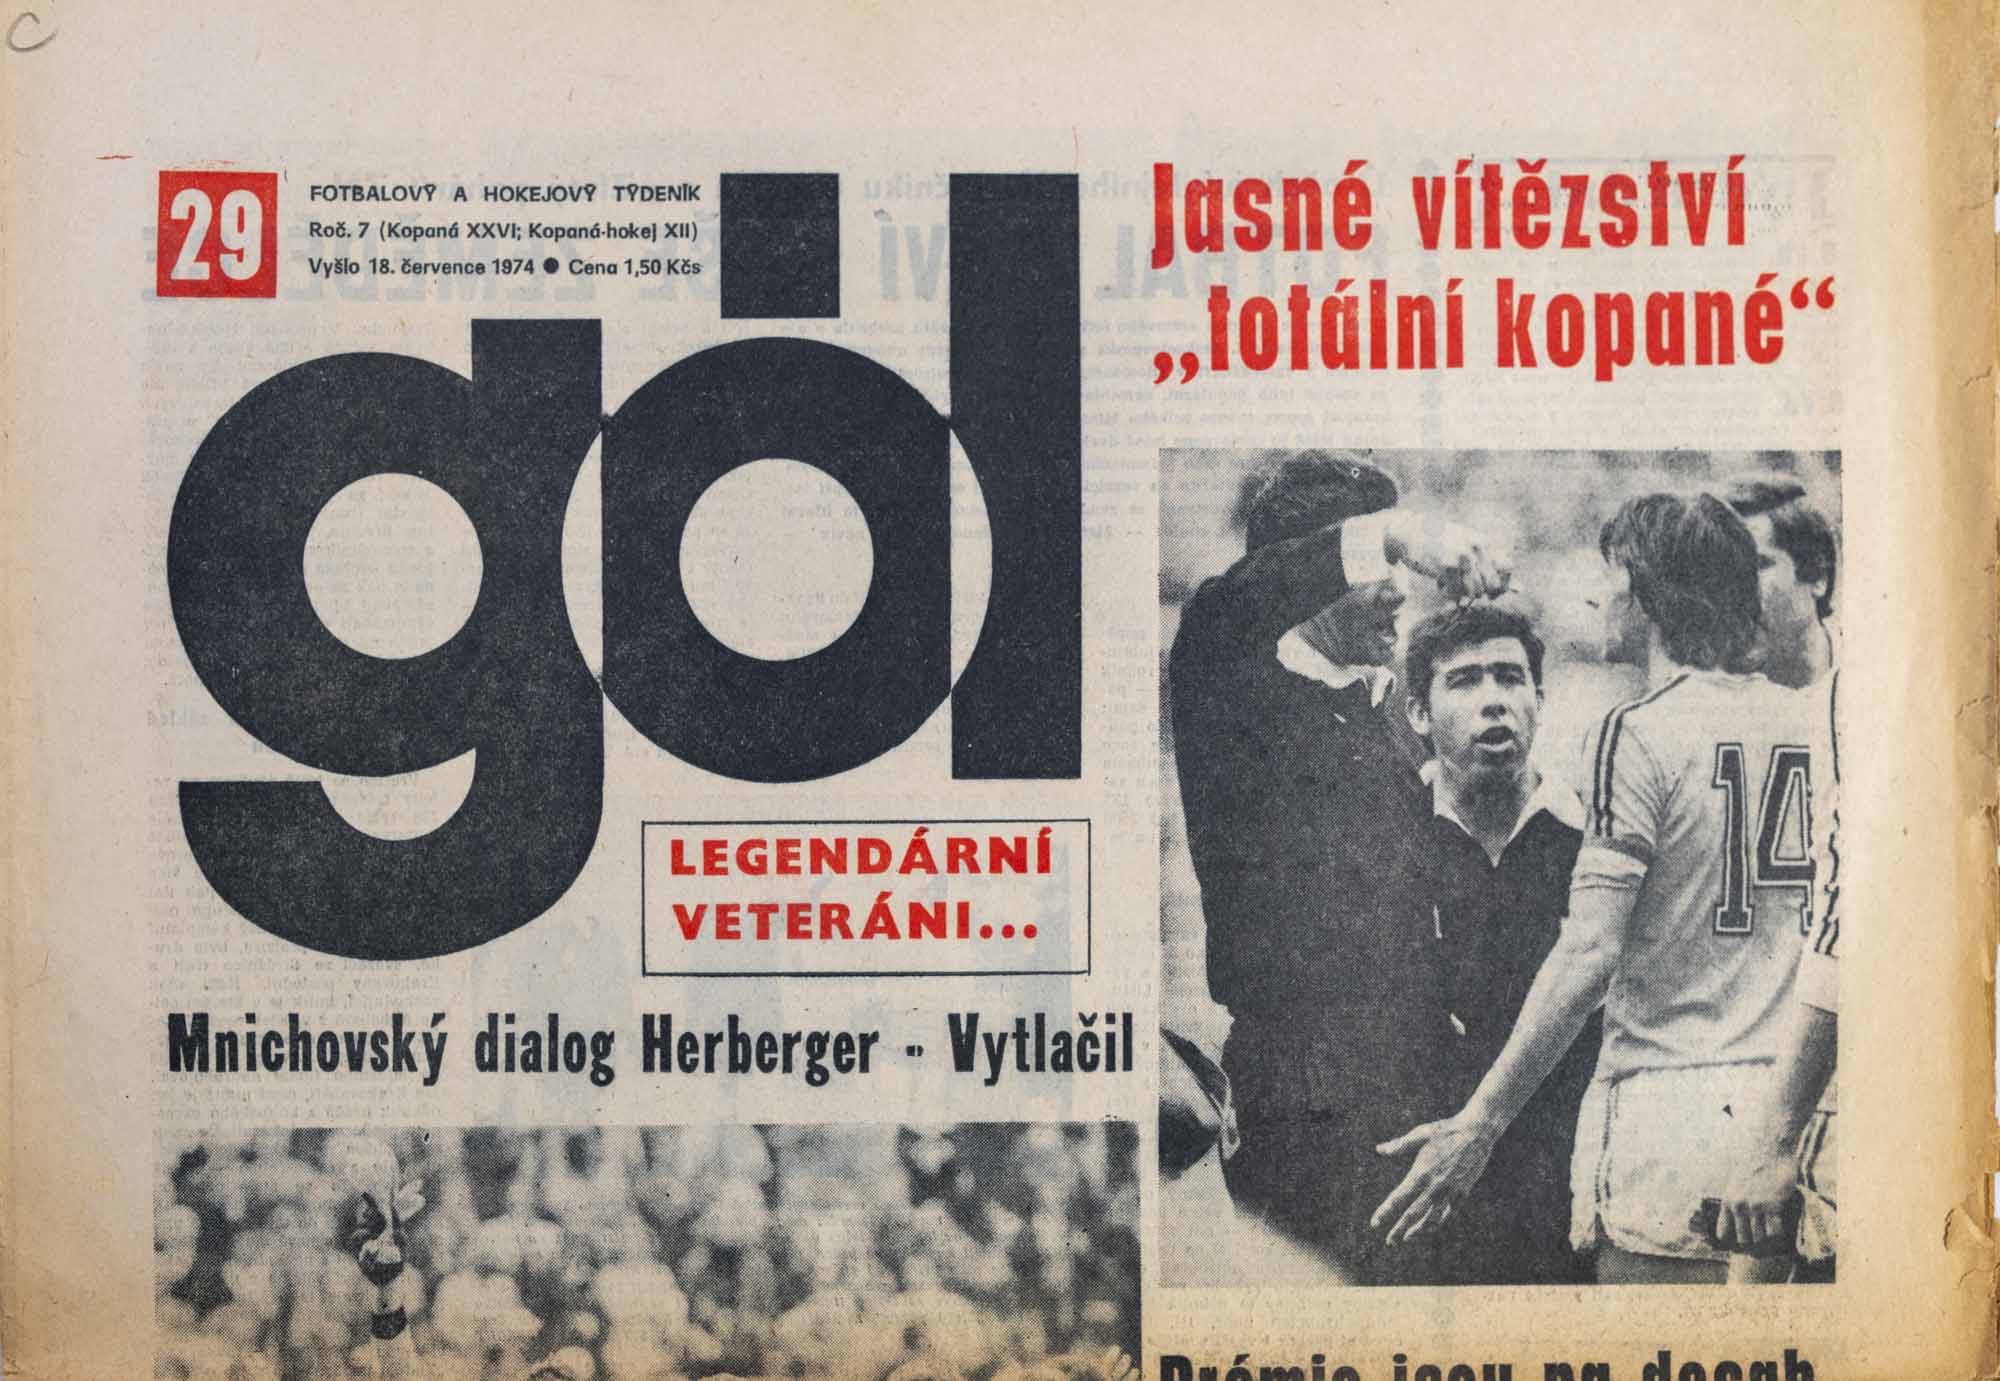 GÓL. Fotbalový a hokejový týdeník, 7/26/12/1974 č. 29